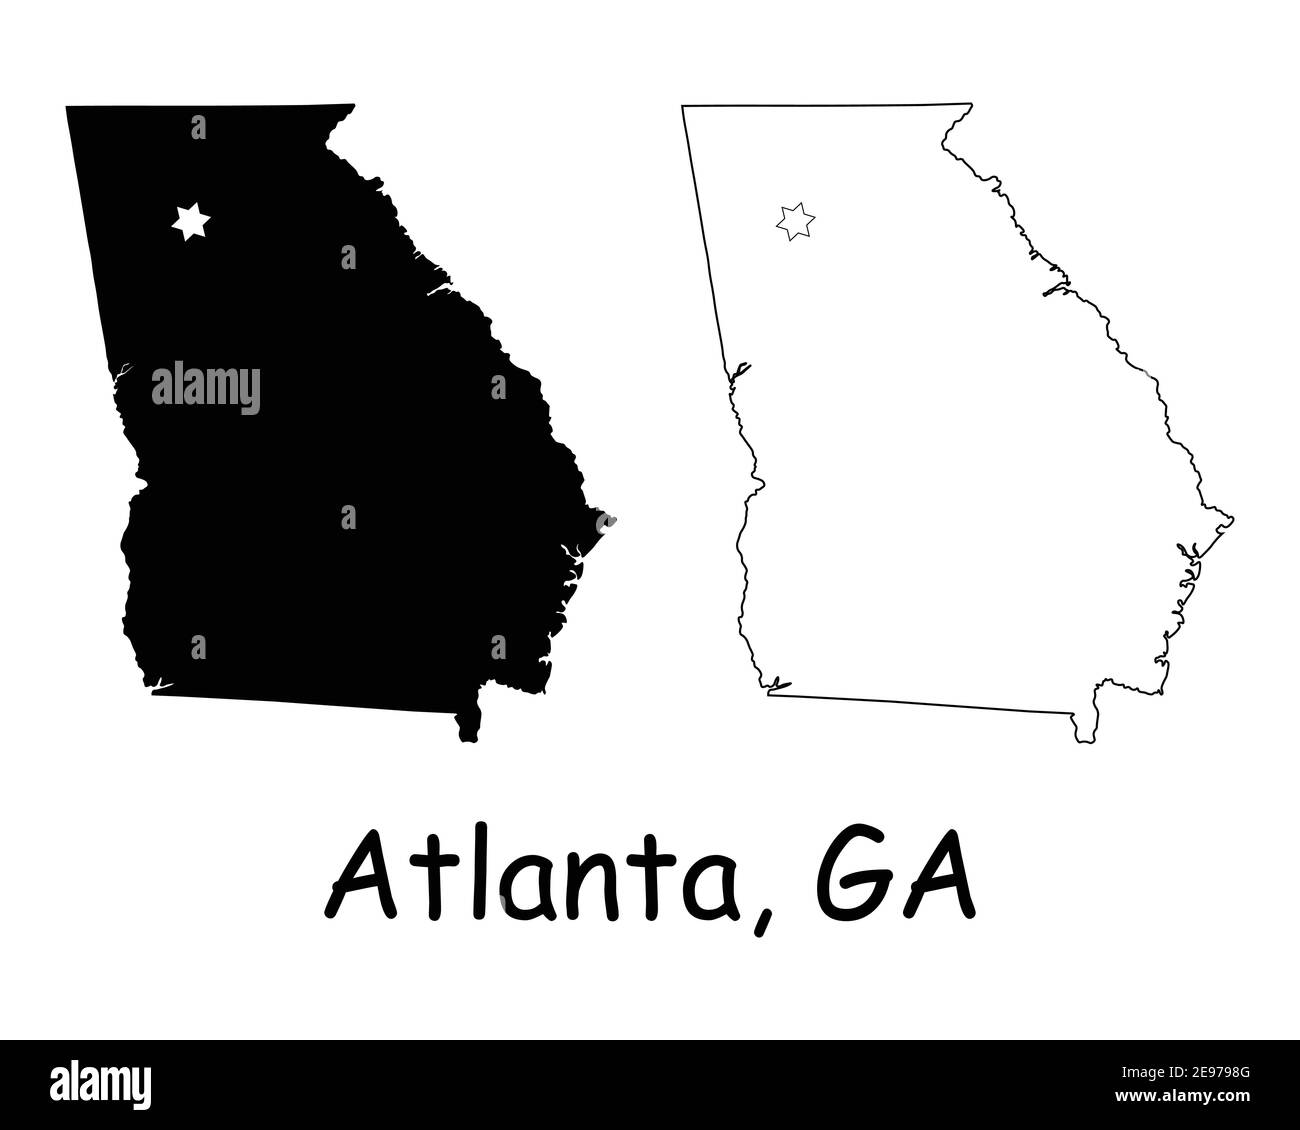 Georgia GA State Karte USA mit Capital City Star in Atlanta. Schwarze Silhouette und Umriss isoliert auf weißem Hintergrund. EPS-Vektor Stock Vektor